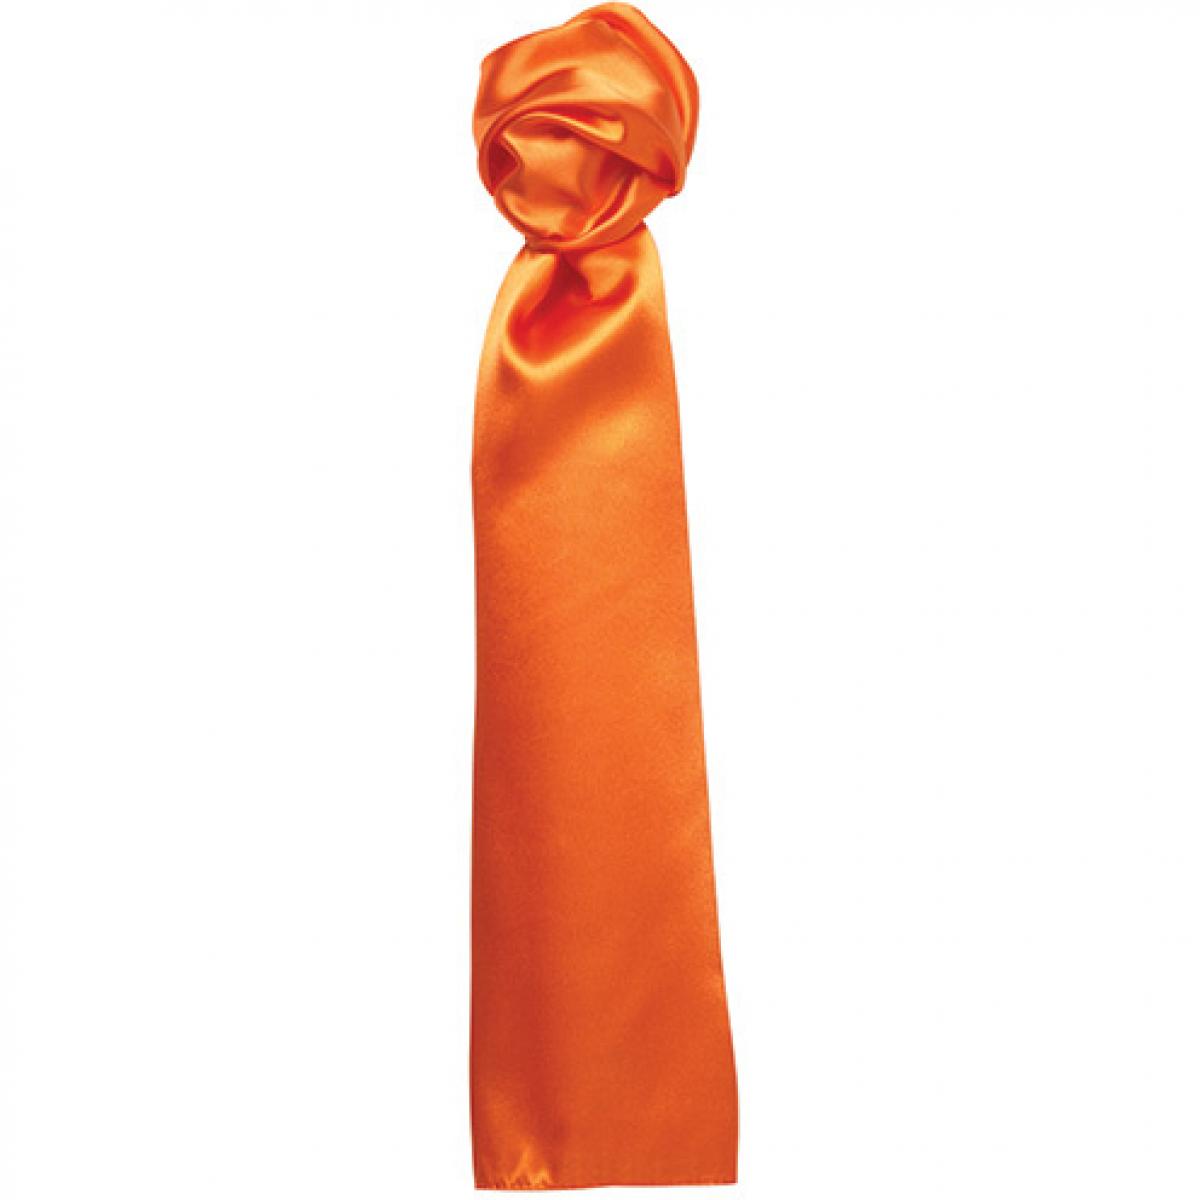 Hersteller: Premier Workwear Herstellernummer: PR730 Artikelbezeichnung: Damenhalstuch uni - 140 x 25 cm Farbe: Orange (ca. Pantone 137C)